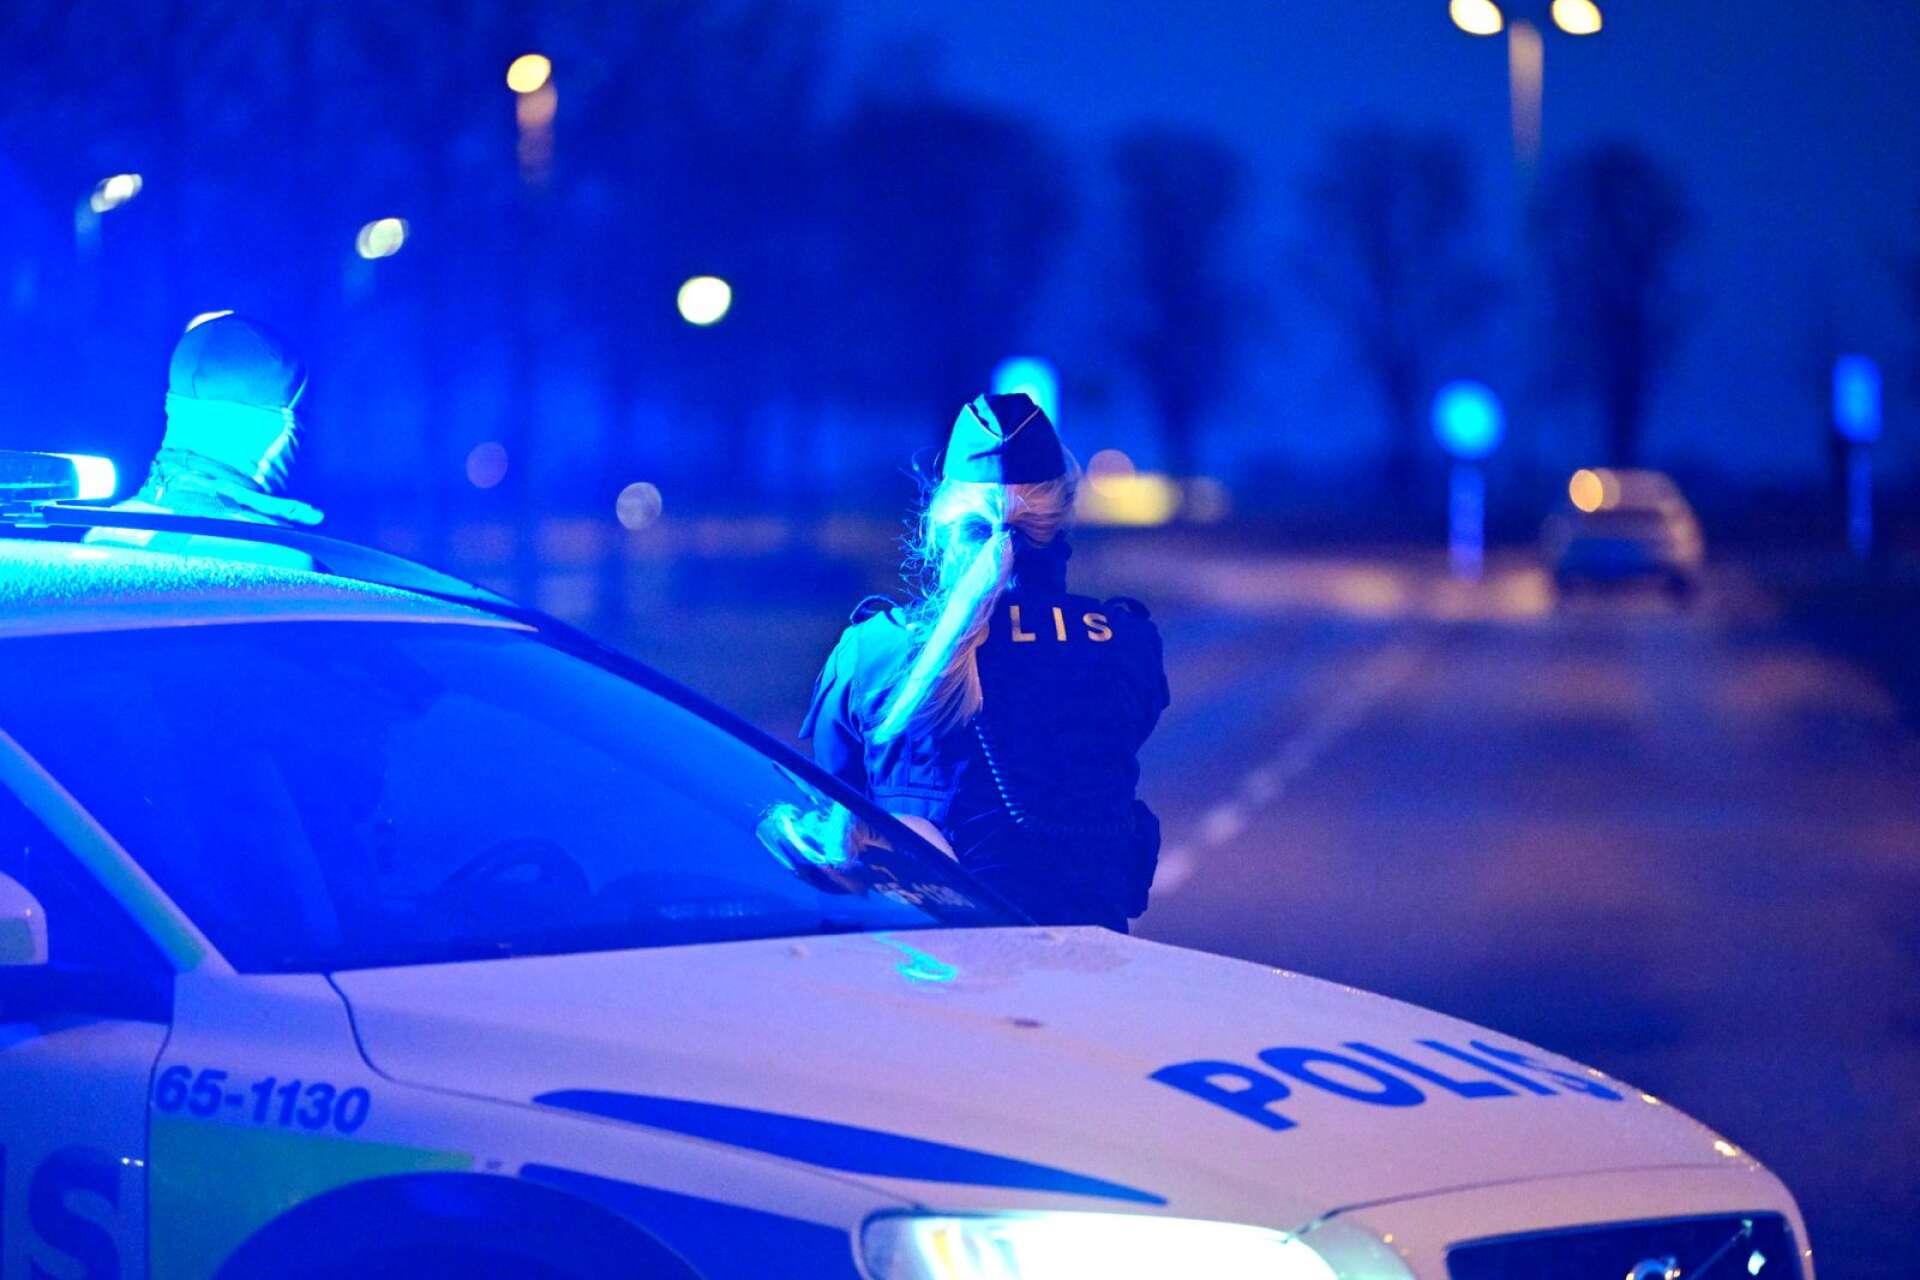 Polisen stoppade en förare på E18 i Karlstad misstänkt för drograttfylleri. Under husrannsakan hittades två knivar. Genrebild.